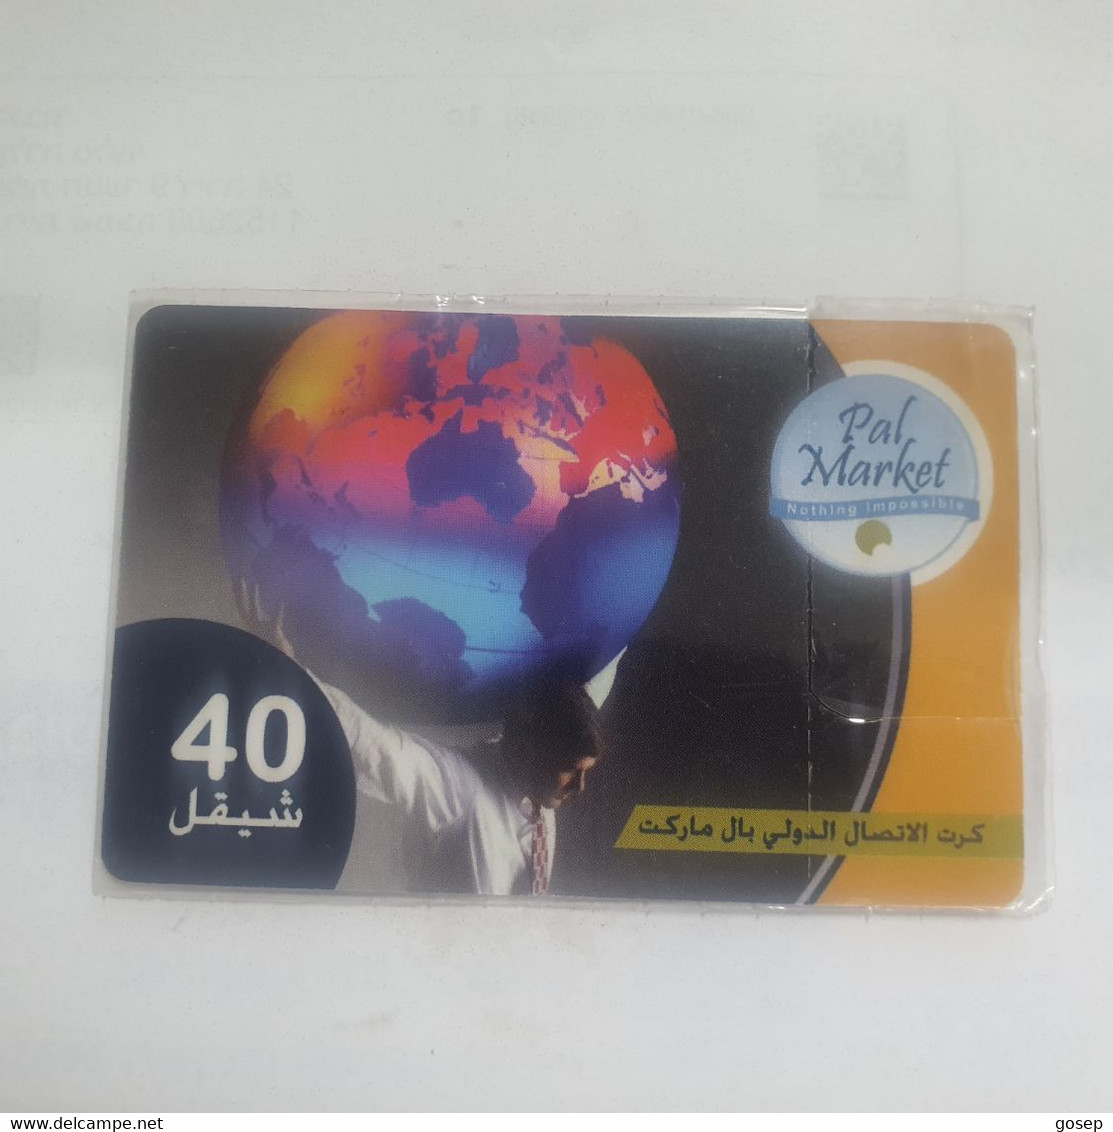 PALESTINE-(PA-G-0010F)-pal Market-(390)-(cod Enclosed-123701620)-(40₪)-(31.12.07)mint Card+1prepiad Free - Palestina